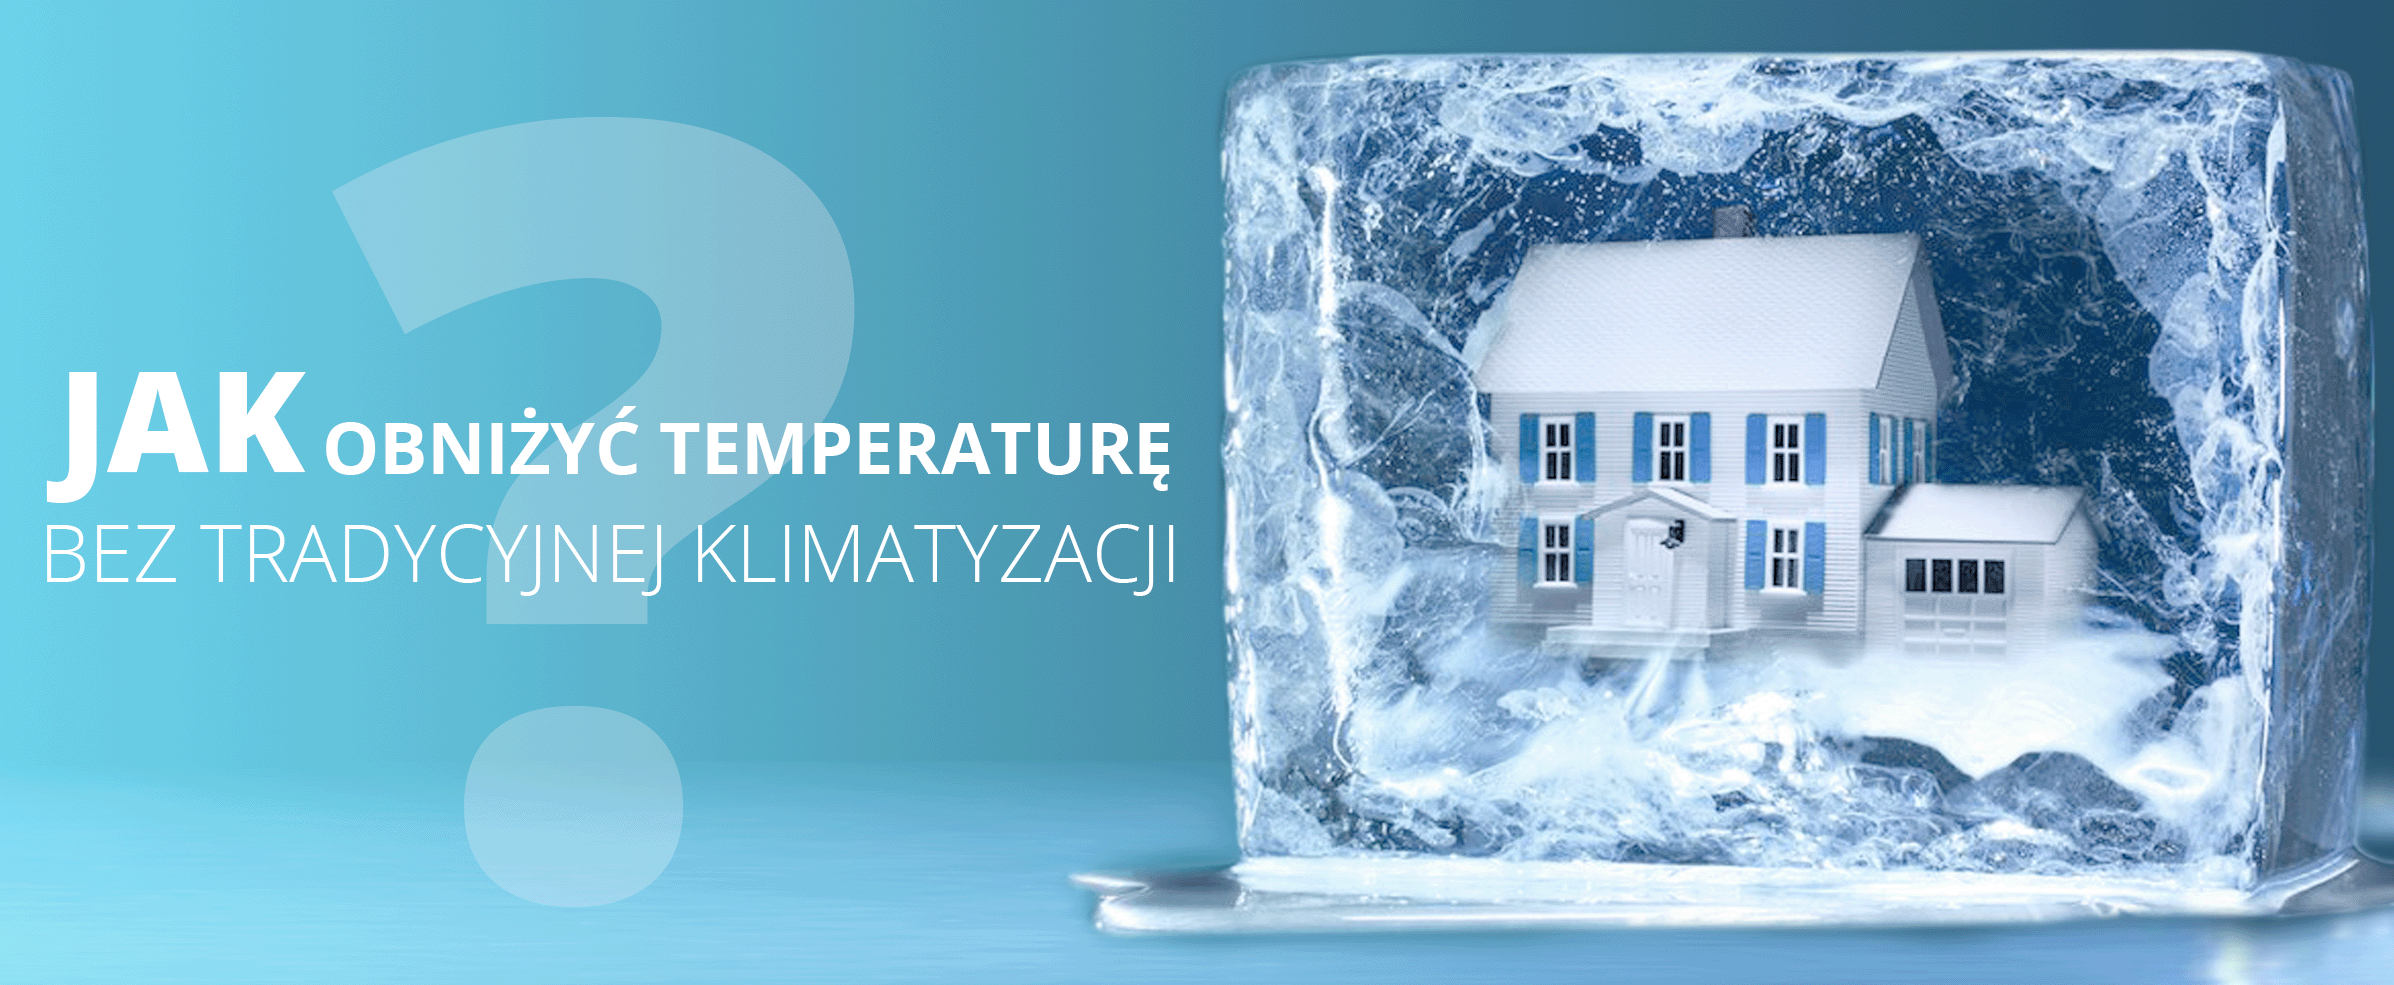 Jak obniżyć temperaturę w domu bez tradycyjnej klimatyzacji - sposoby